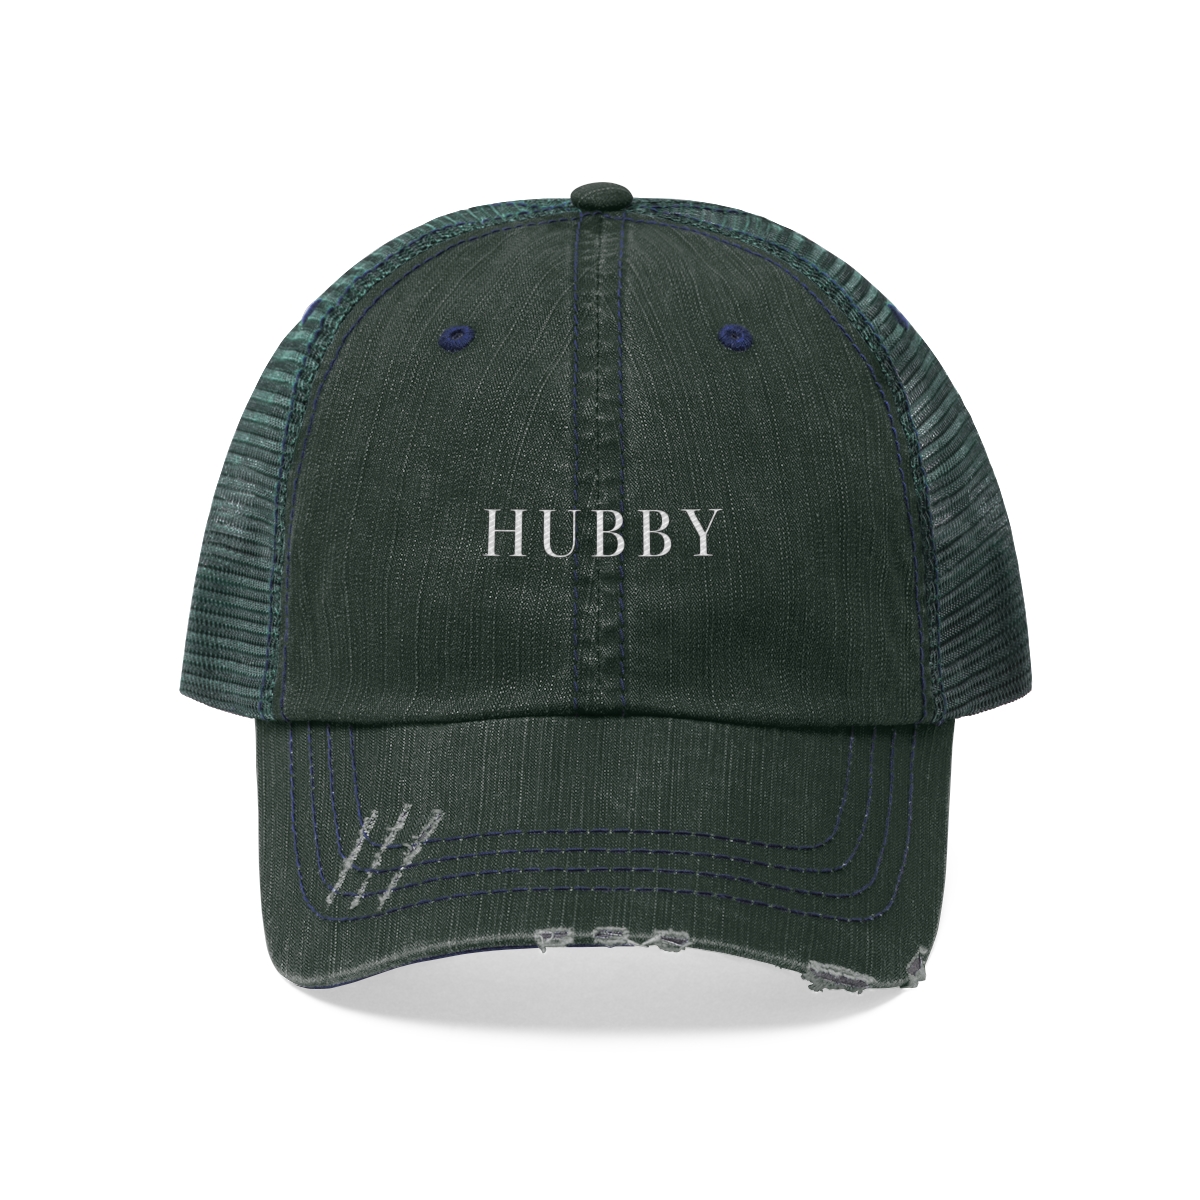 Hubby Trucker Hat!